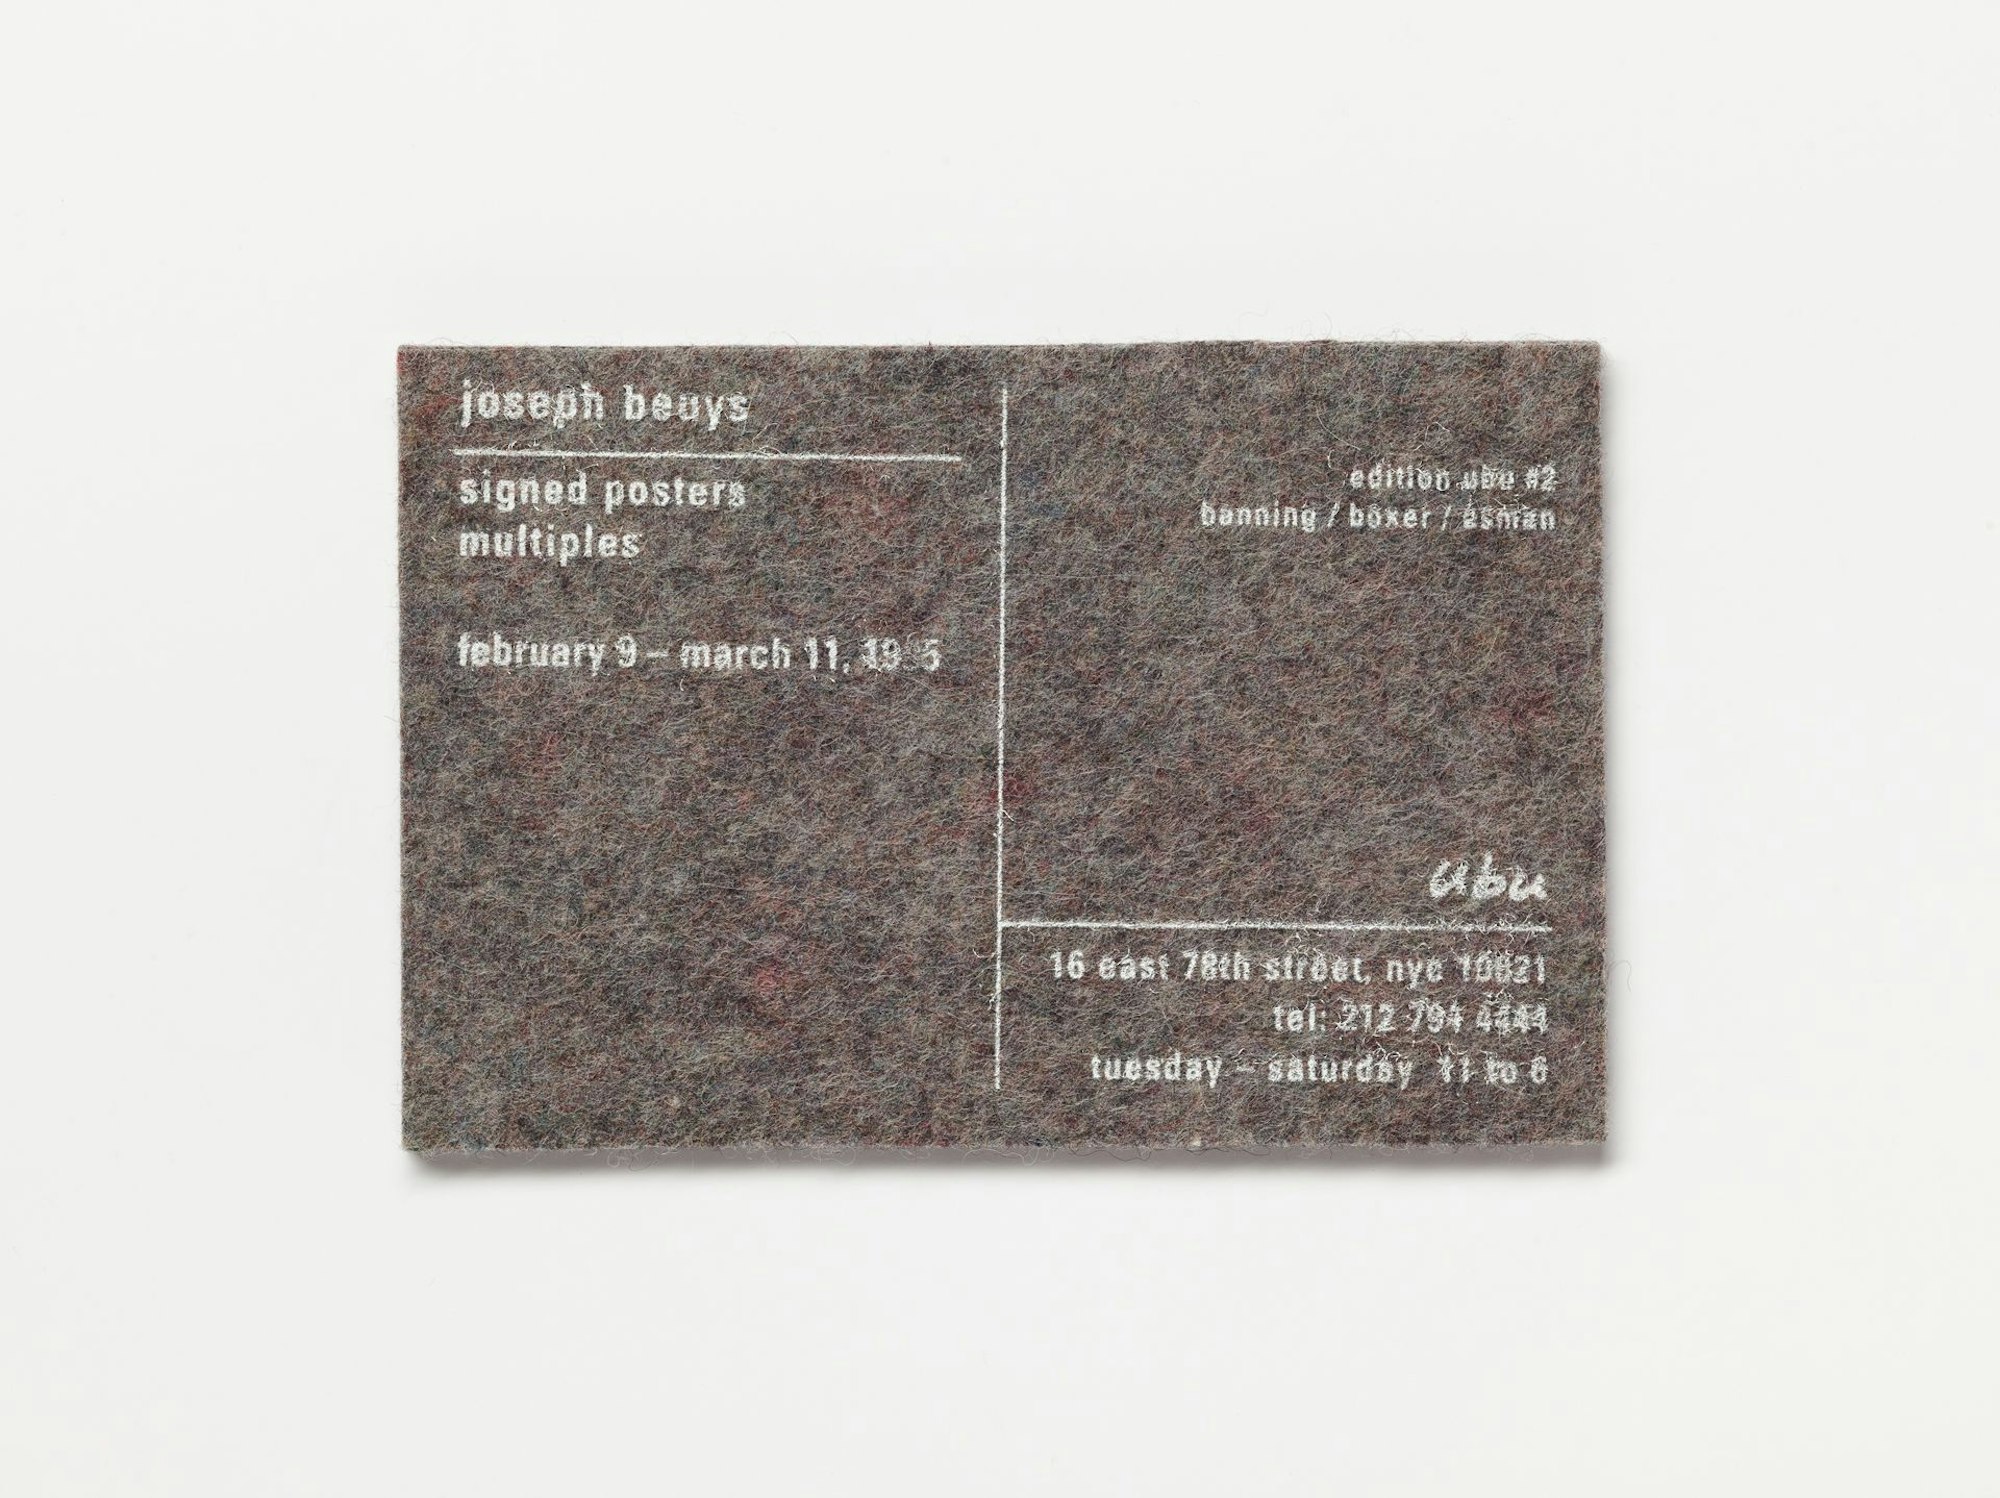 Einladung für eine Ausstellung mit Werken von Joseph Beuys in New York 1996.